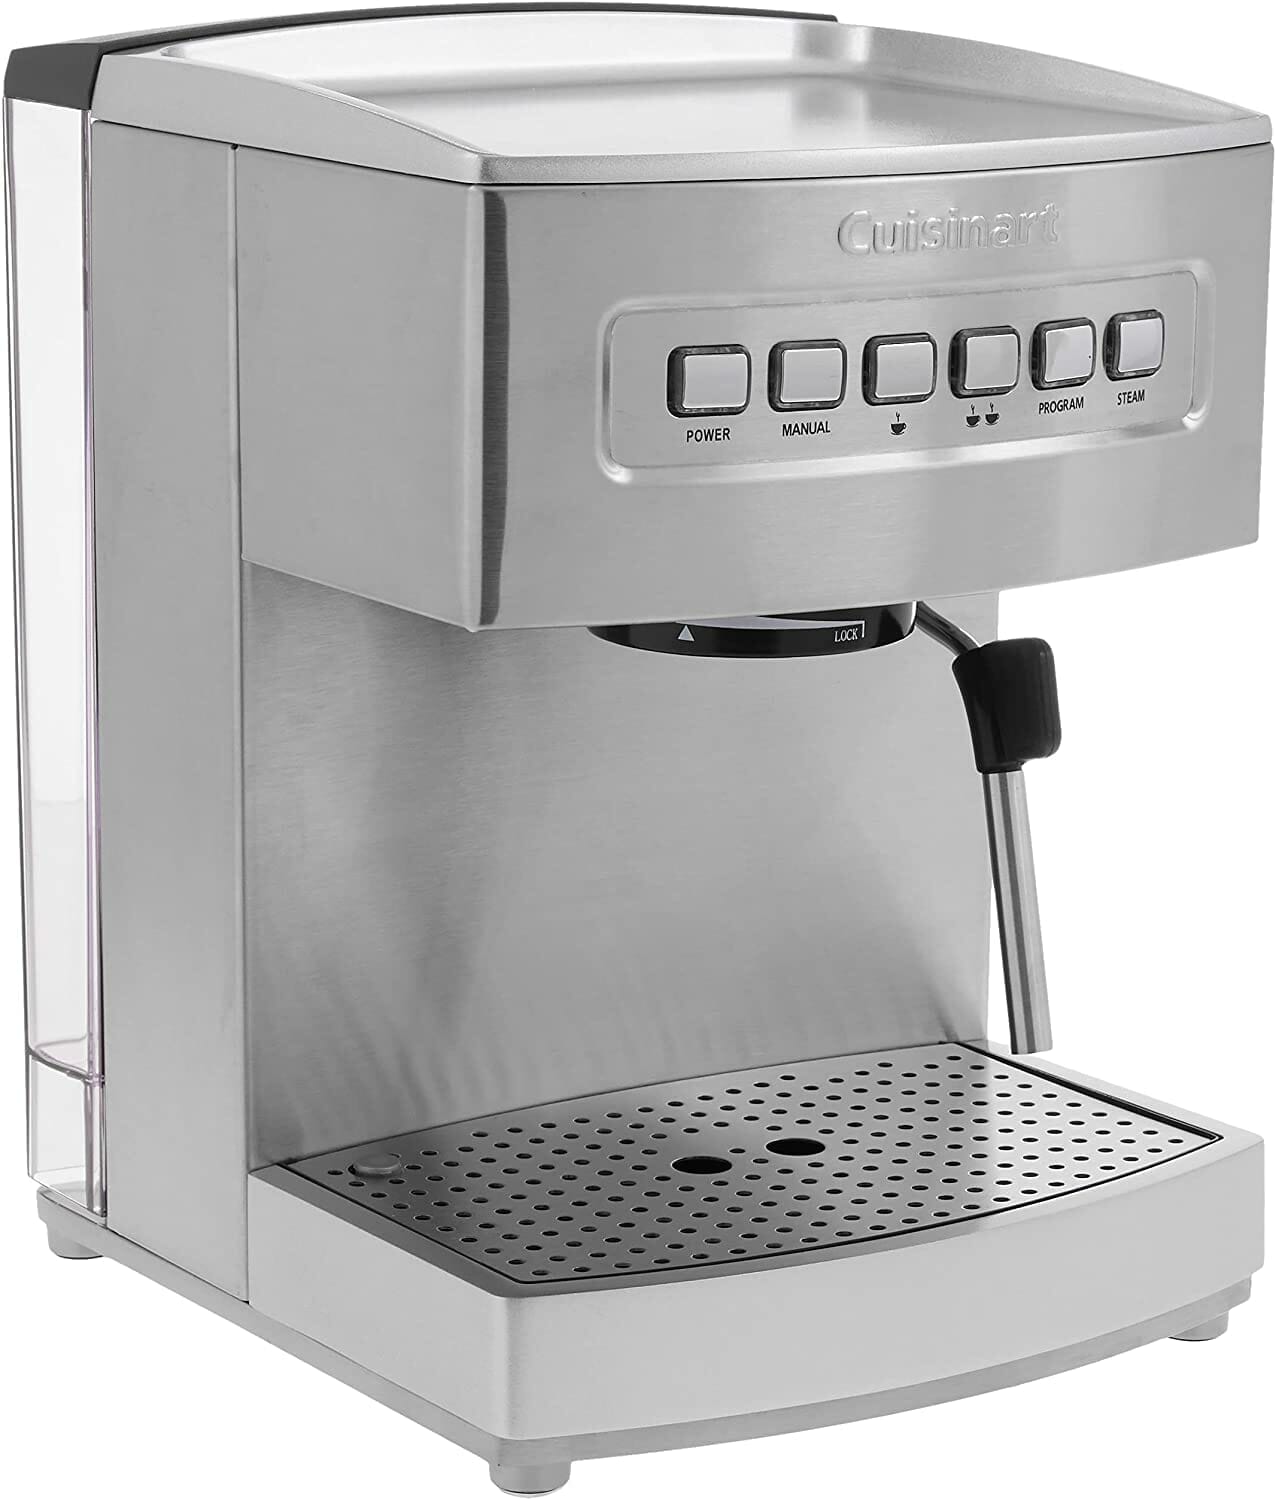 Cuisinart EM-200NP1 Espresso Machine Review